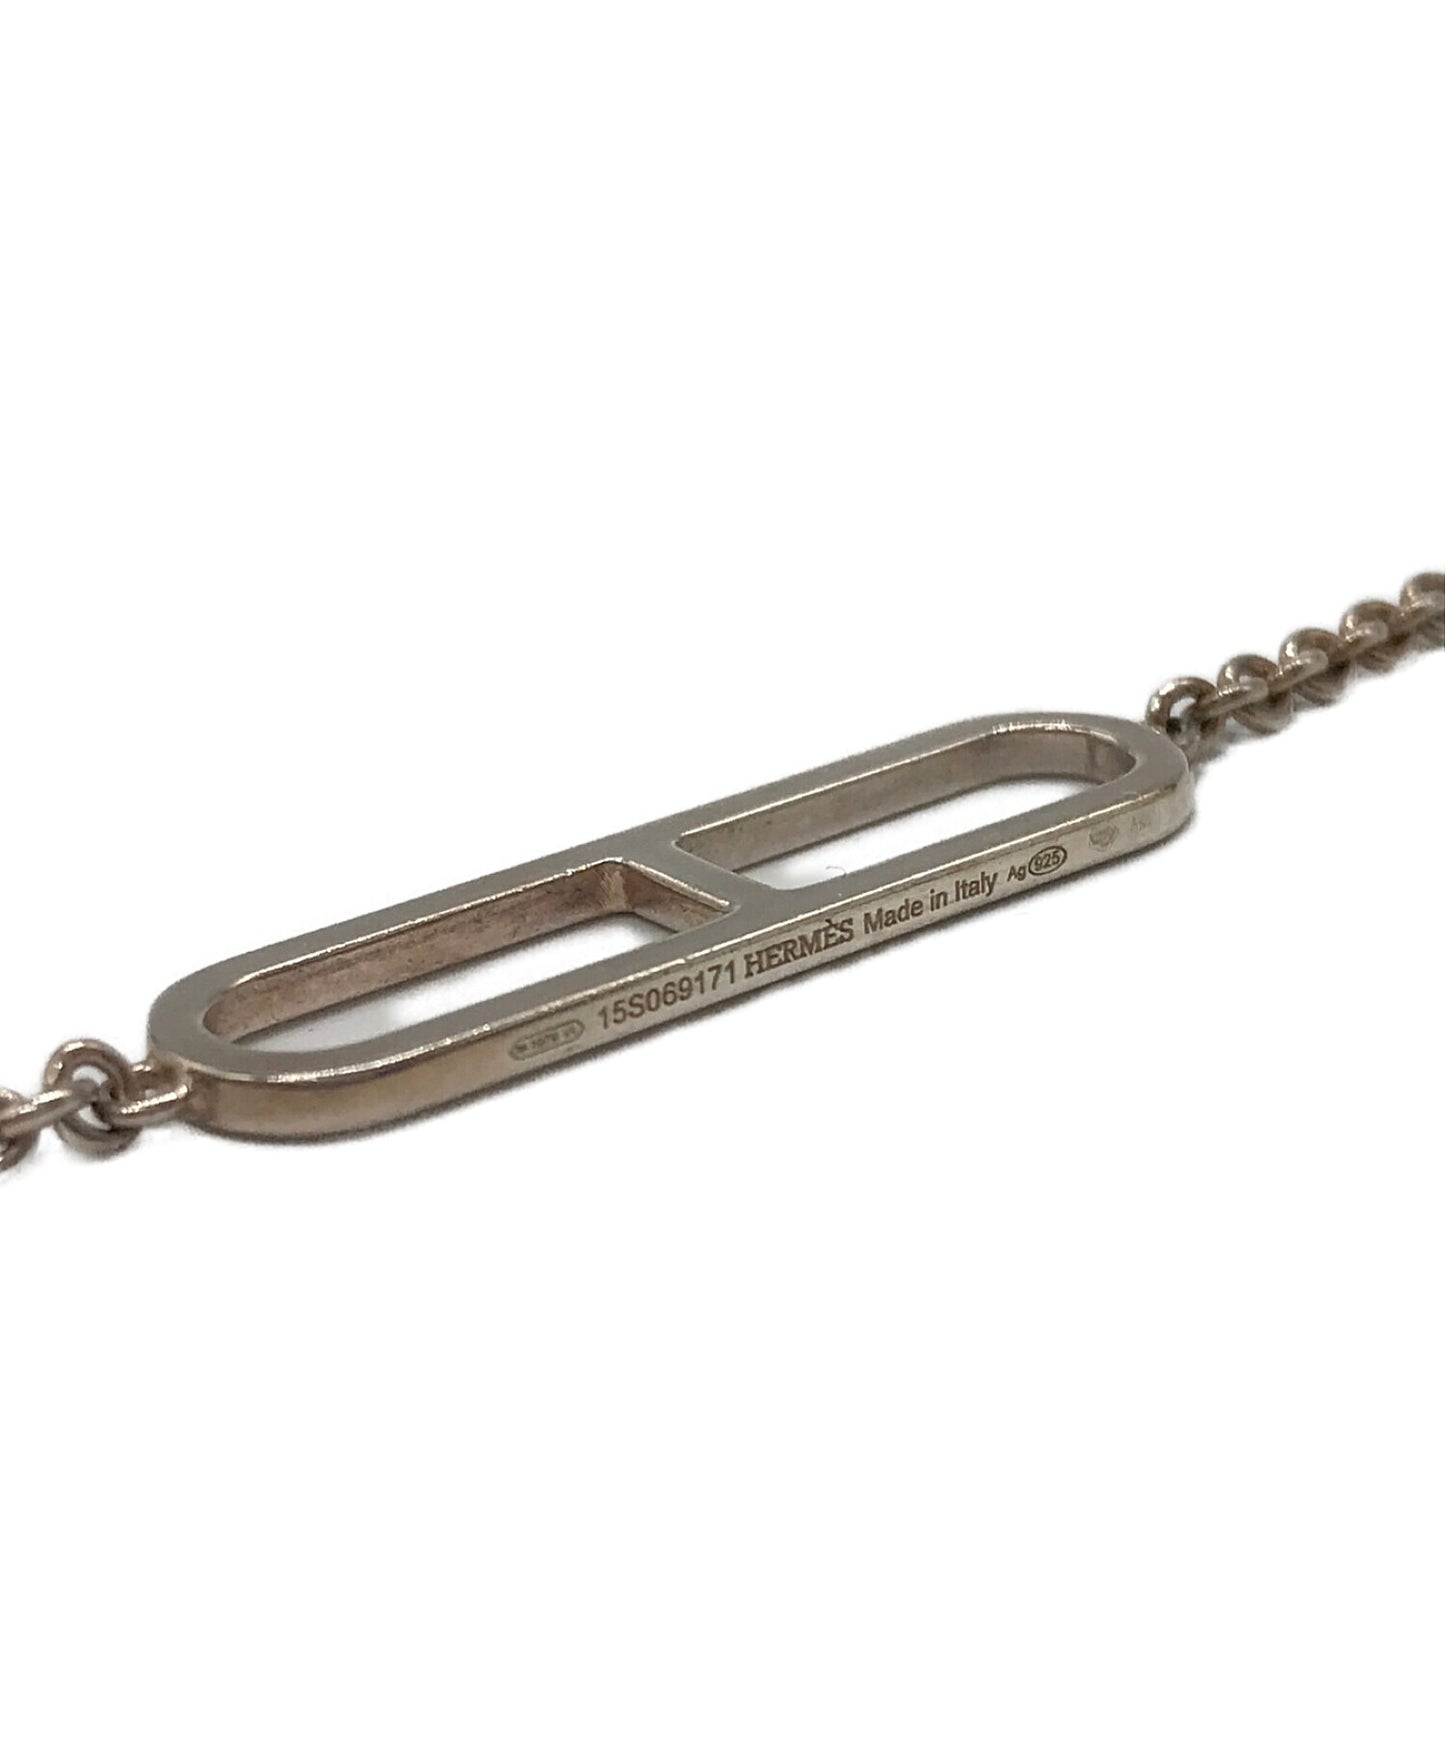 Hermes Everchaine Dunkle Necklace Ag925